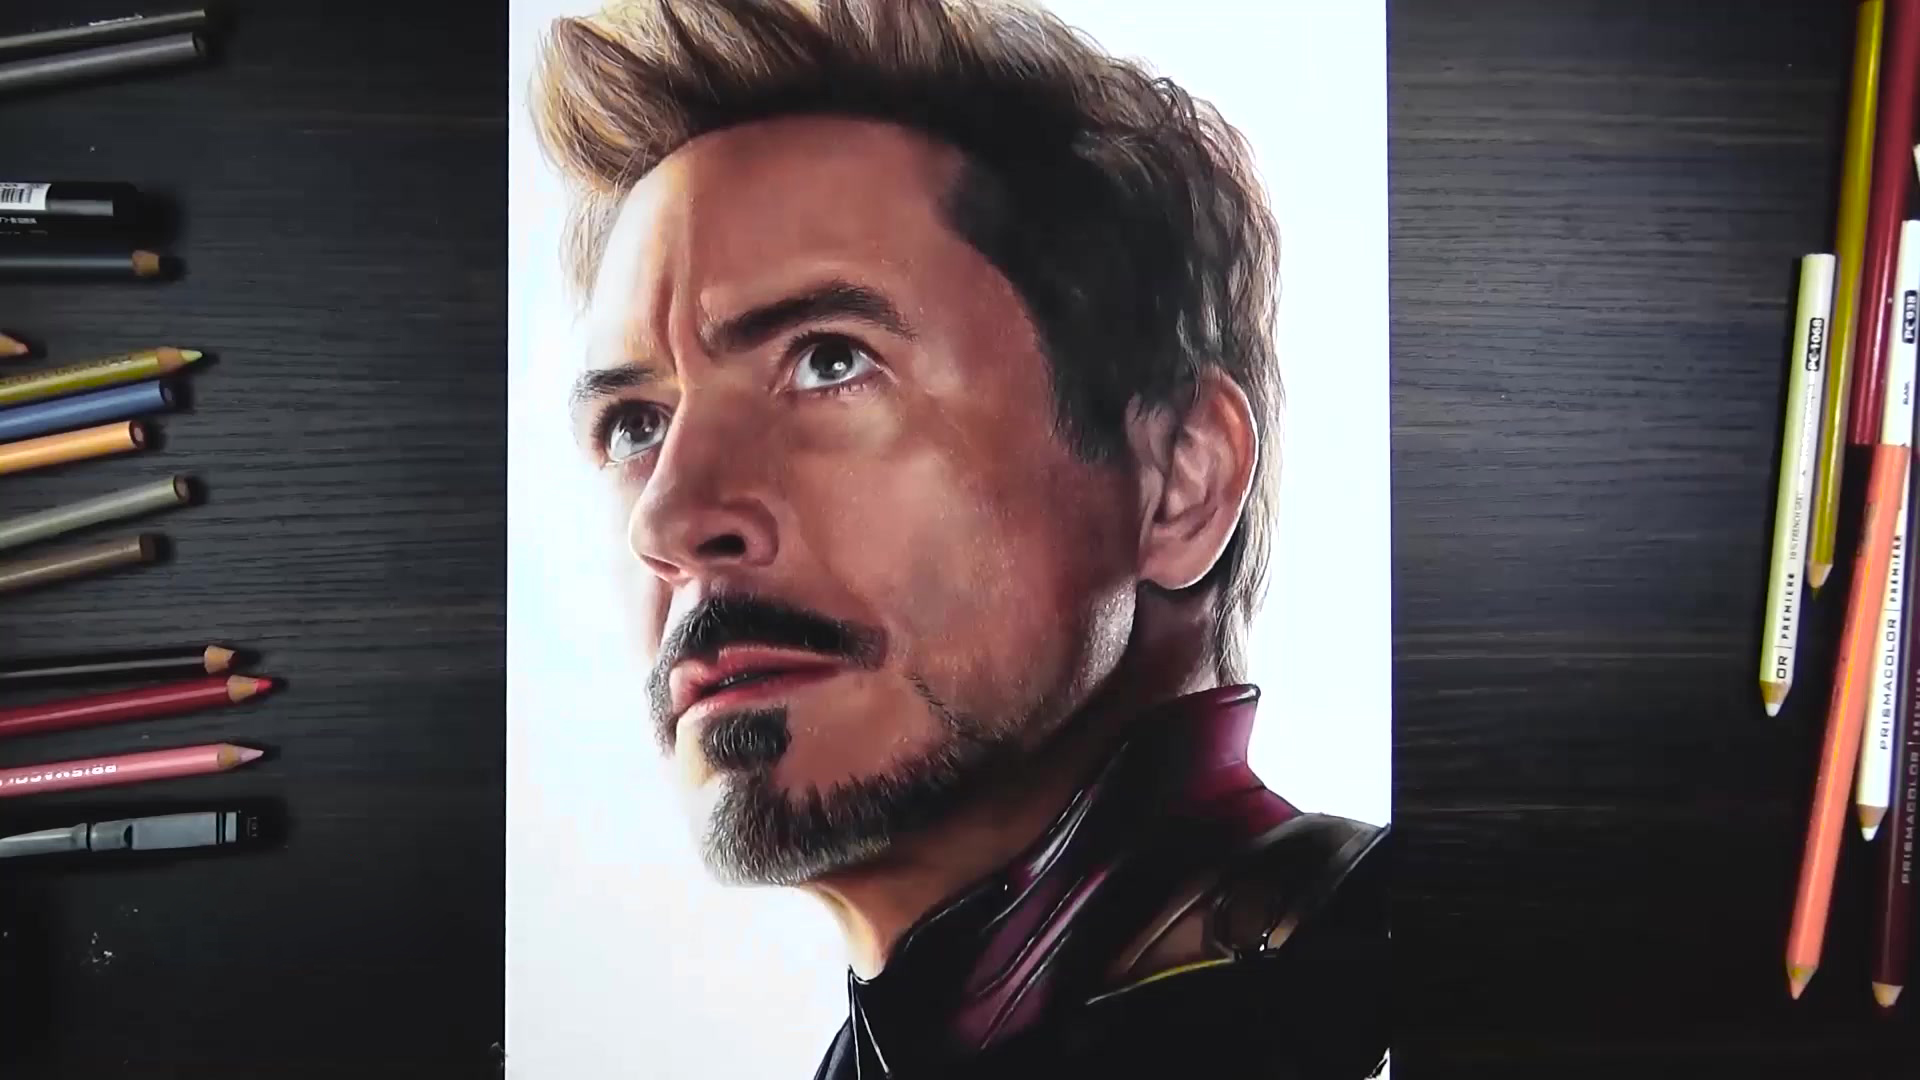 Màn kết Iron Man đầy ấn tượng và hoành tráng sẽ khiến bạn choáng ngợp. Những hình ảnh của chiếc áo giáp đỏ bóng loáng sẽ cho bạn cảm giác như đang đứng giữa các siêu anh hùng của Marvel. Hãy thưởng thức những màn kết Iron Man đầy chất lượng và cảm nhận sức mạnh kinh ngạc của siêu anh hùng này!